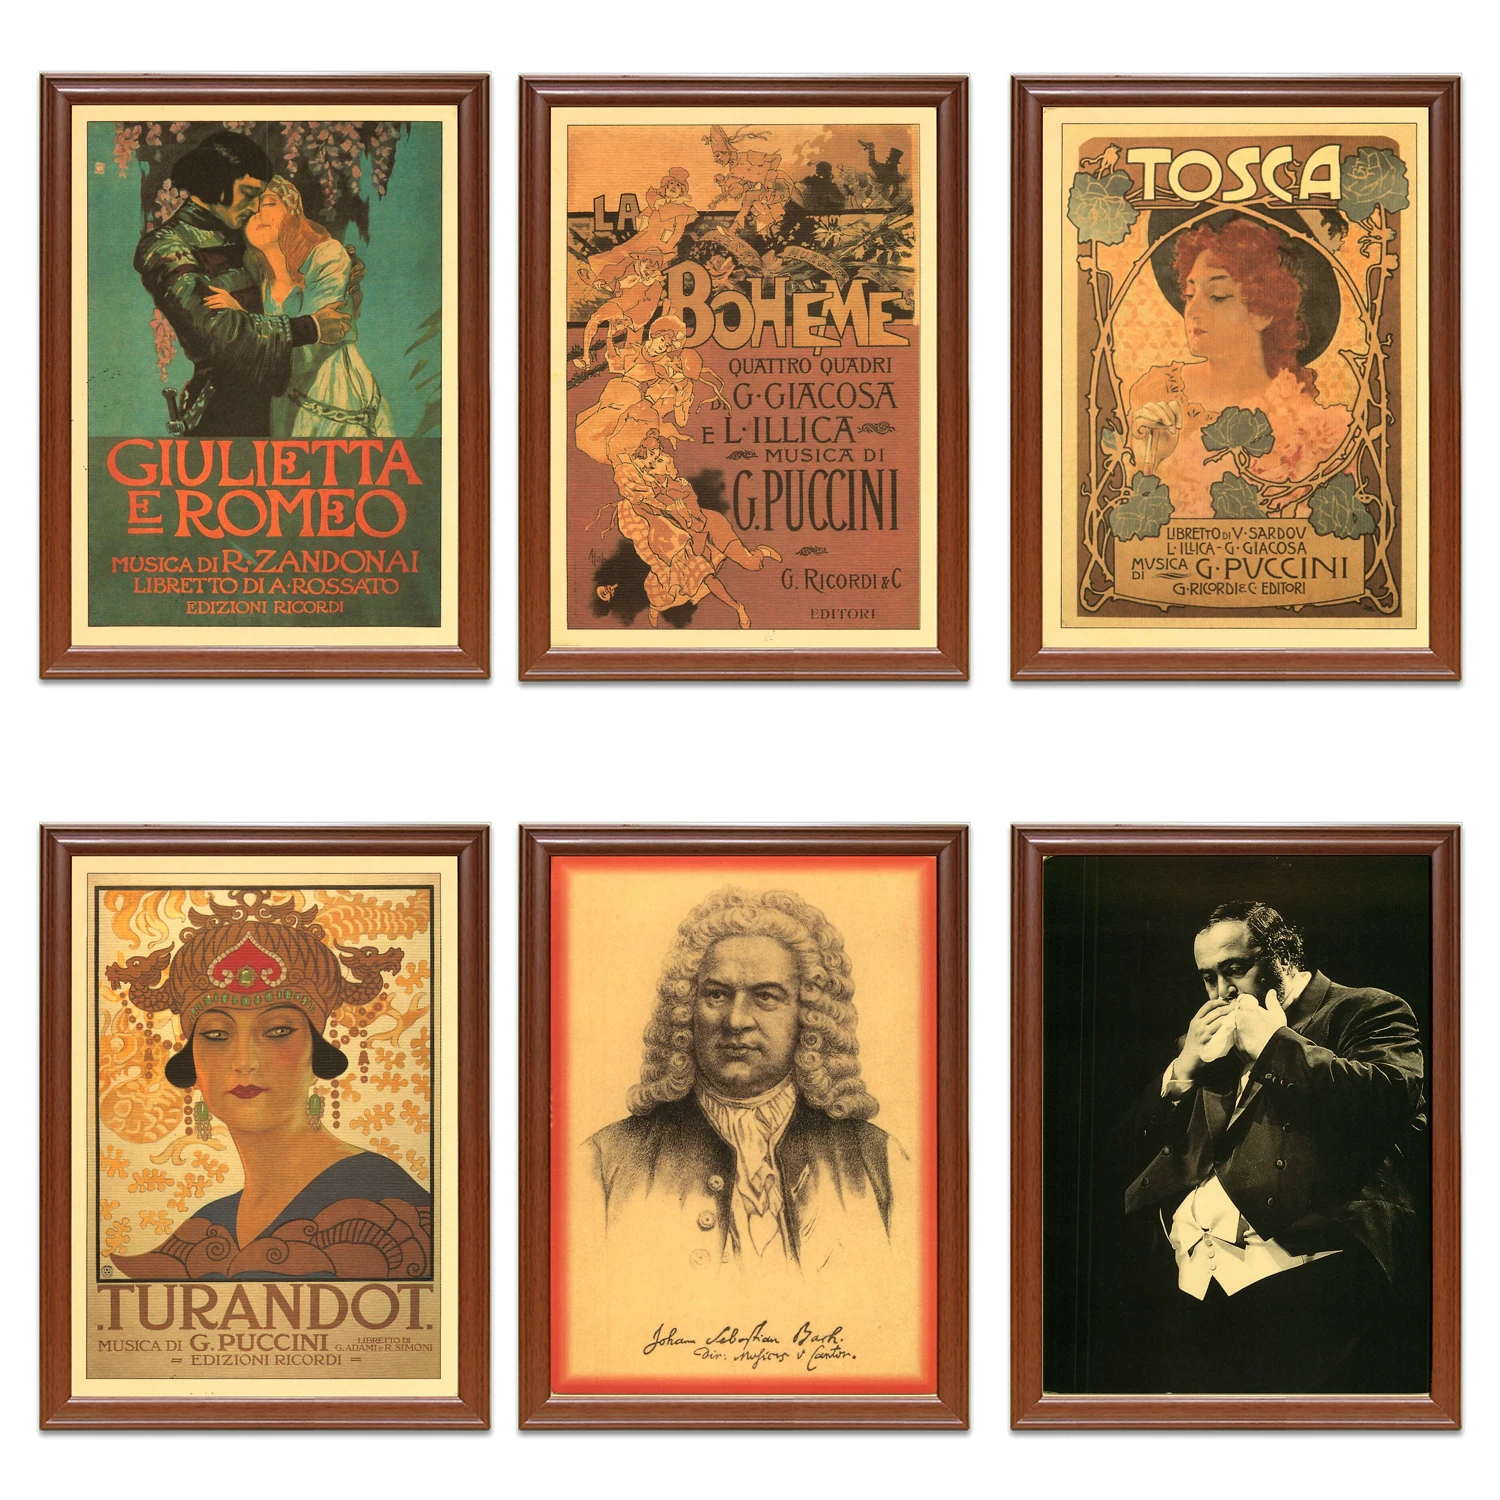 Винтажные классические музыкальные плакаты Bach Vincent Mentzel Opera, крафт-постеры, классические картины на холсте, наклейки на стену, домашний декор, подарок